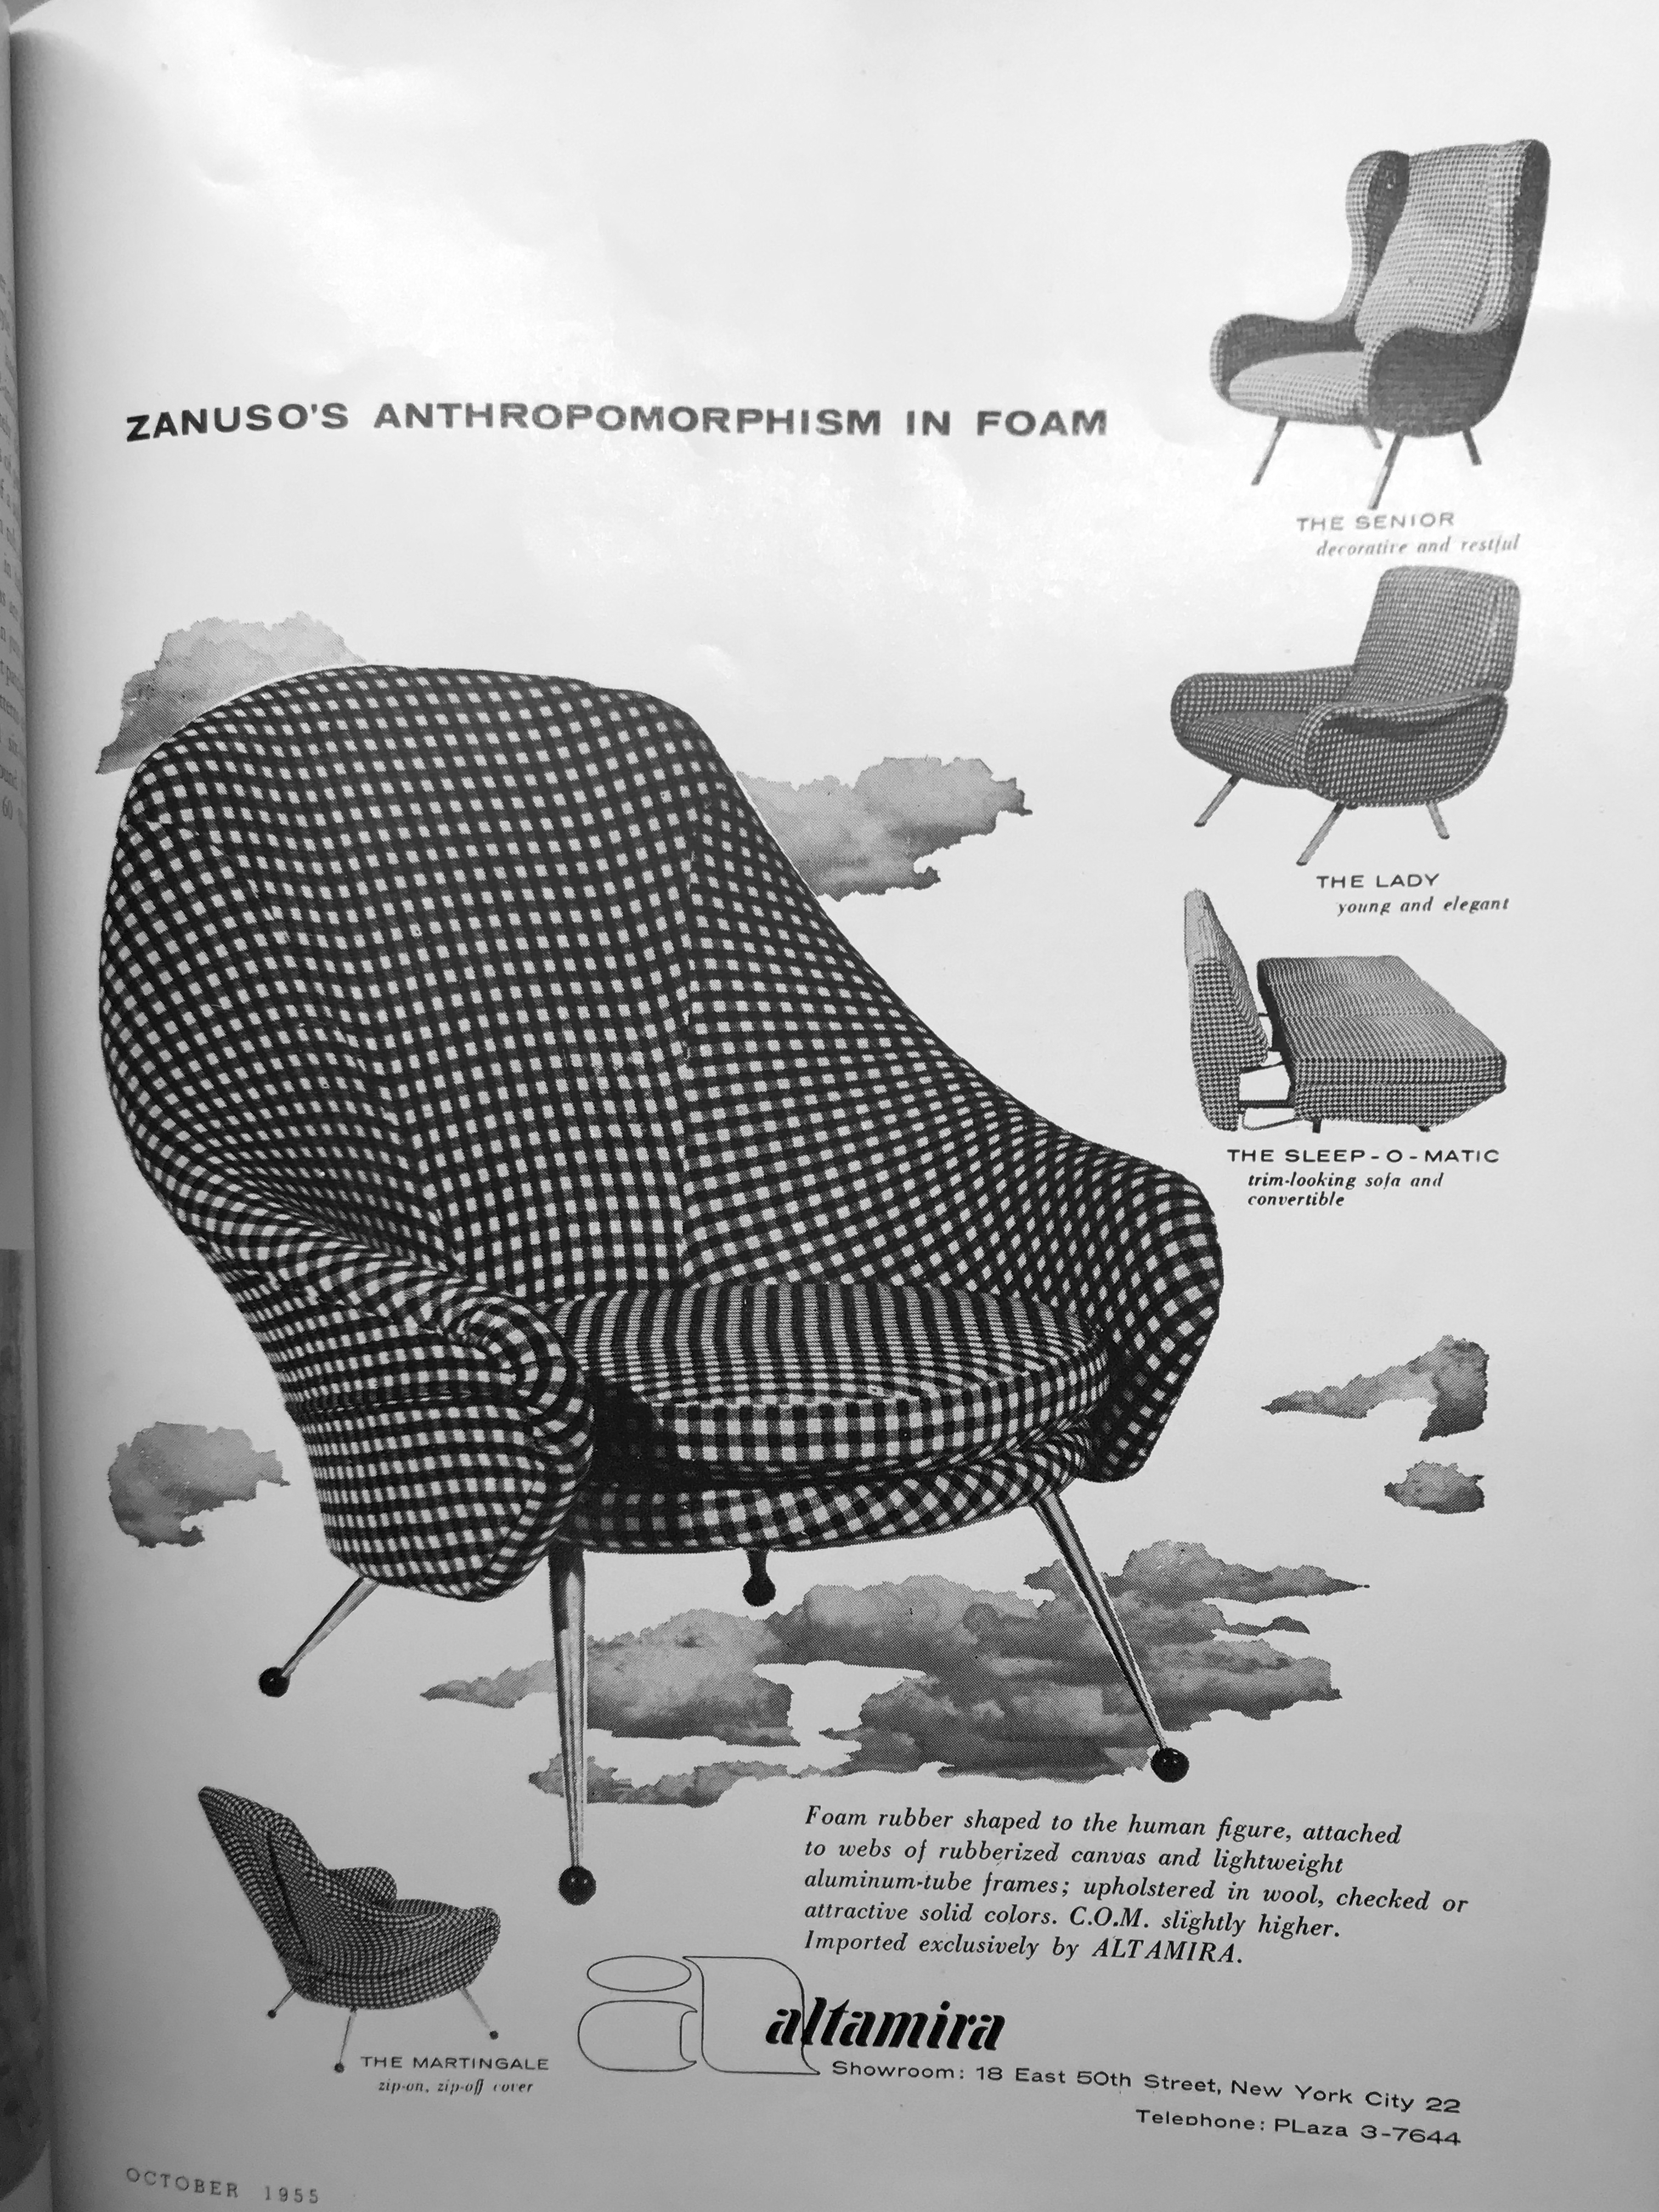 Zanuso's anthropomorphism in foam, October 1955